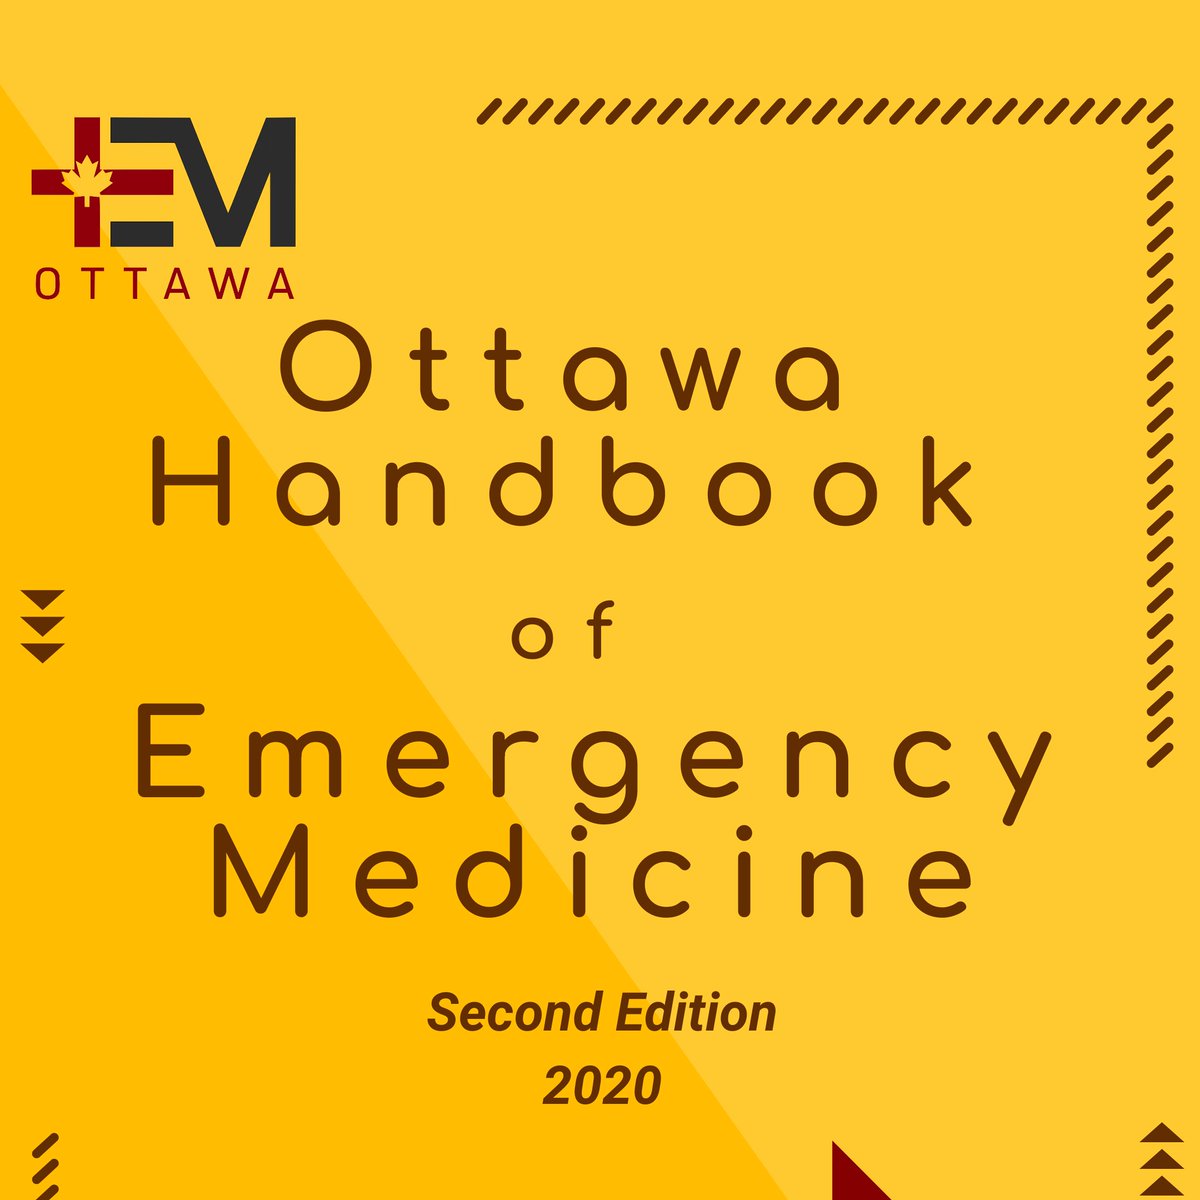 Ottawa Handbook of Emergency Medicine 2nd Edition (2020) (PDF) by Omar Anjum